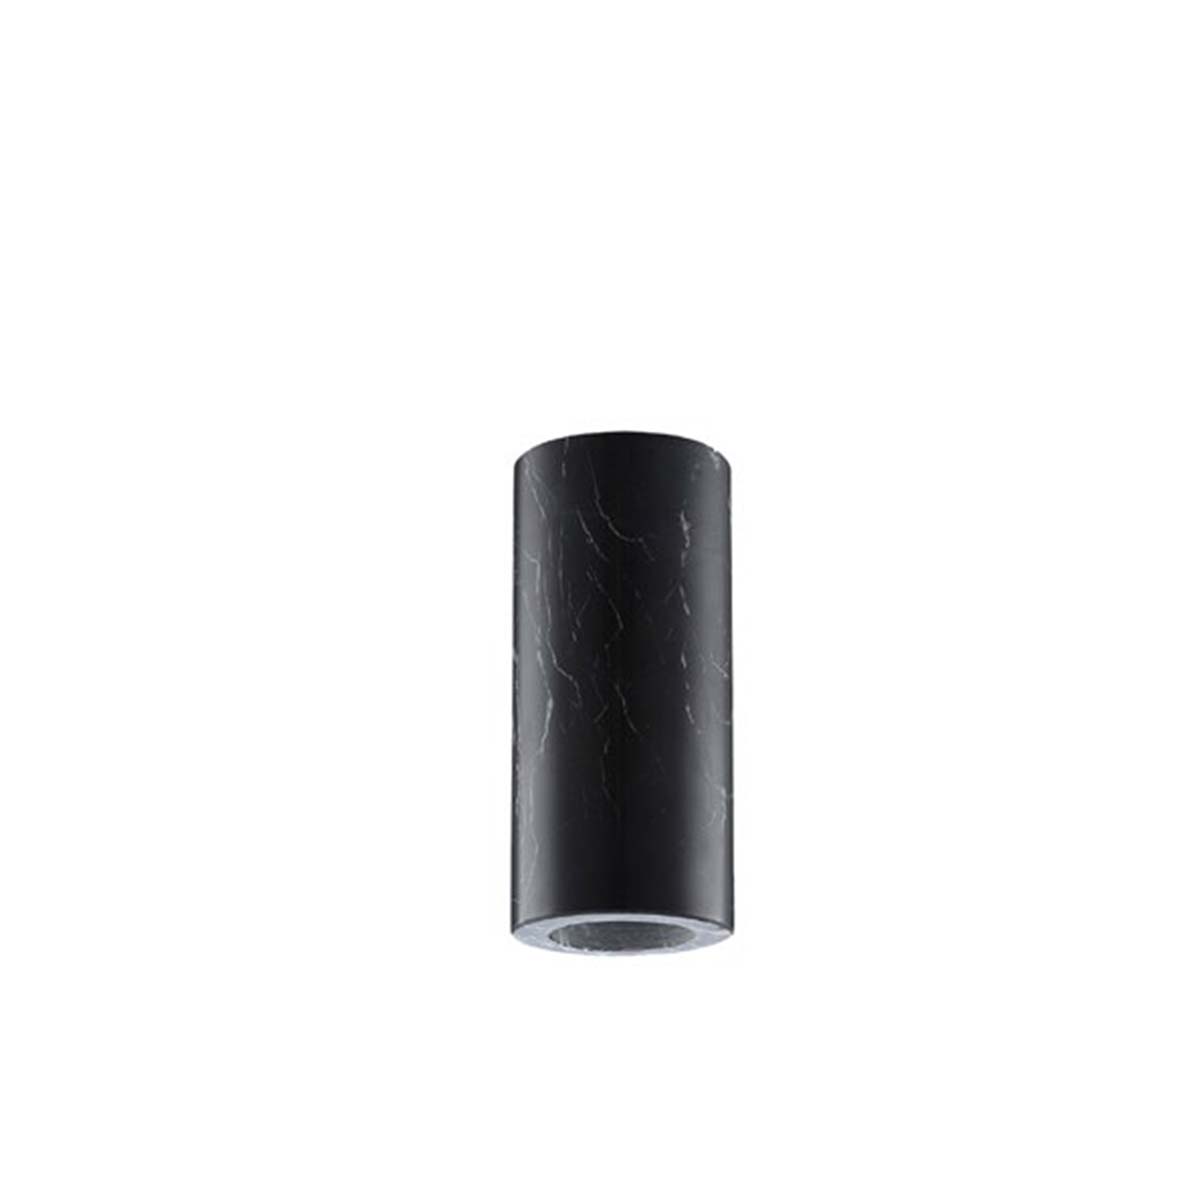 Tangla lighting - TLLH030BK - lamp holder aluminum - E27 - black marble finish